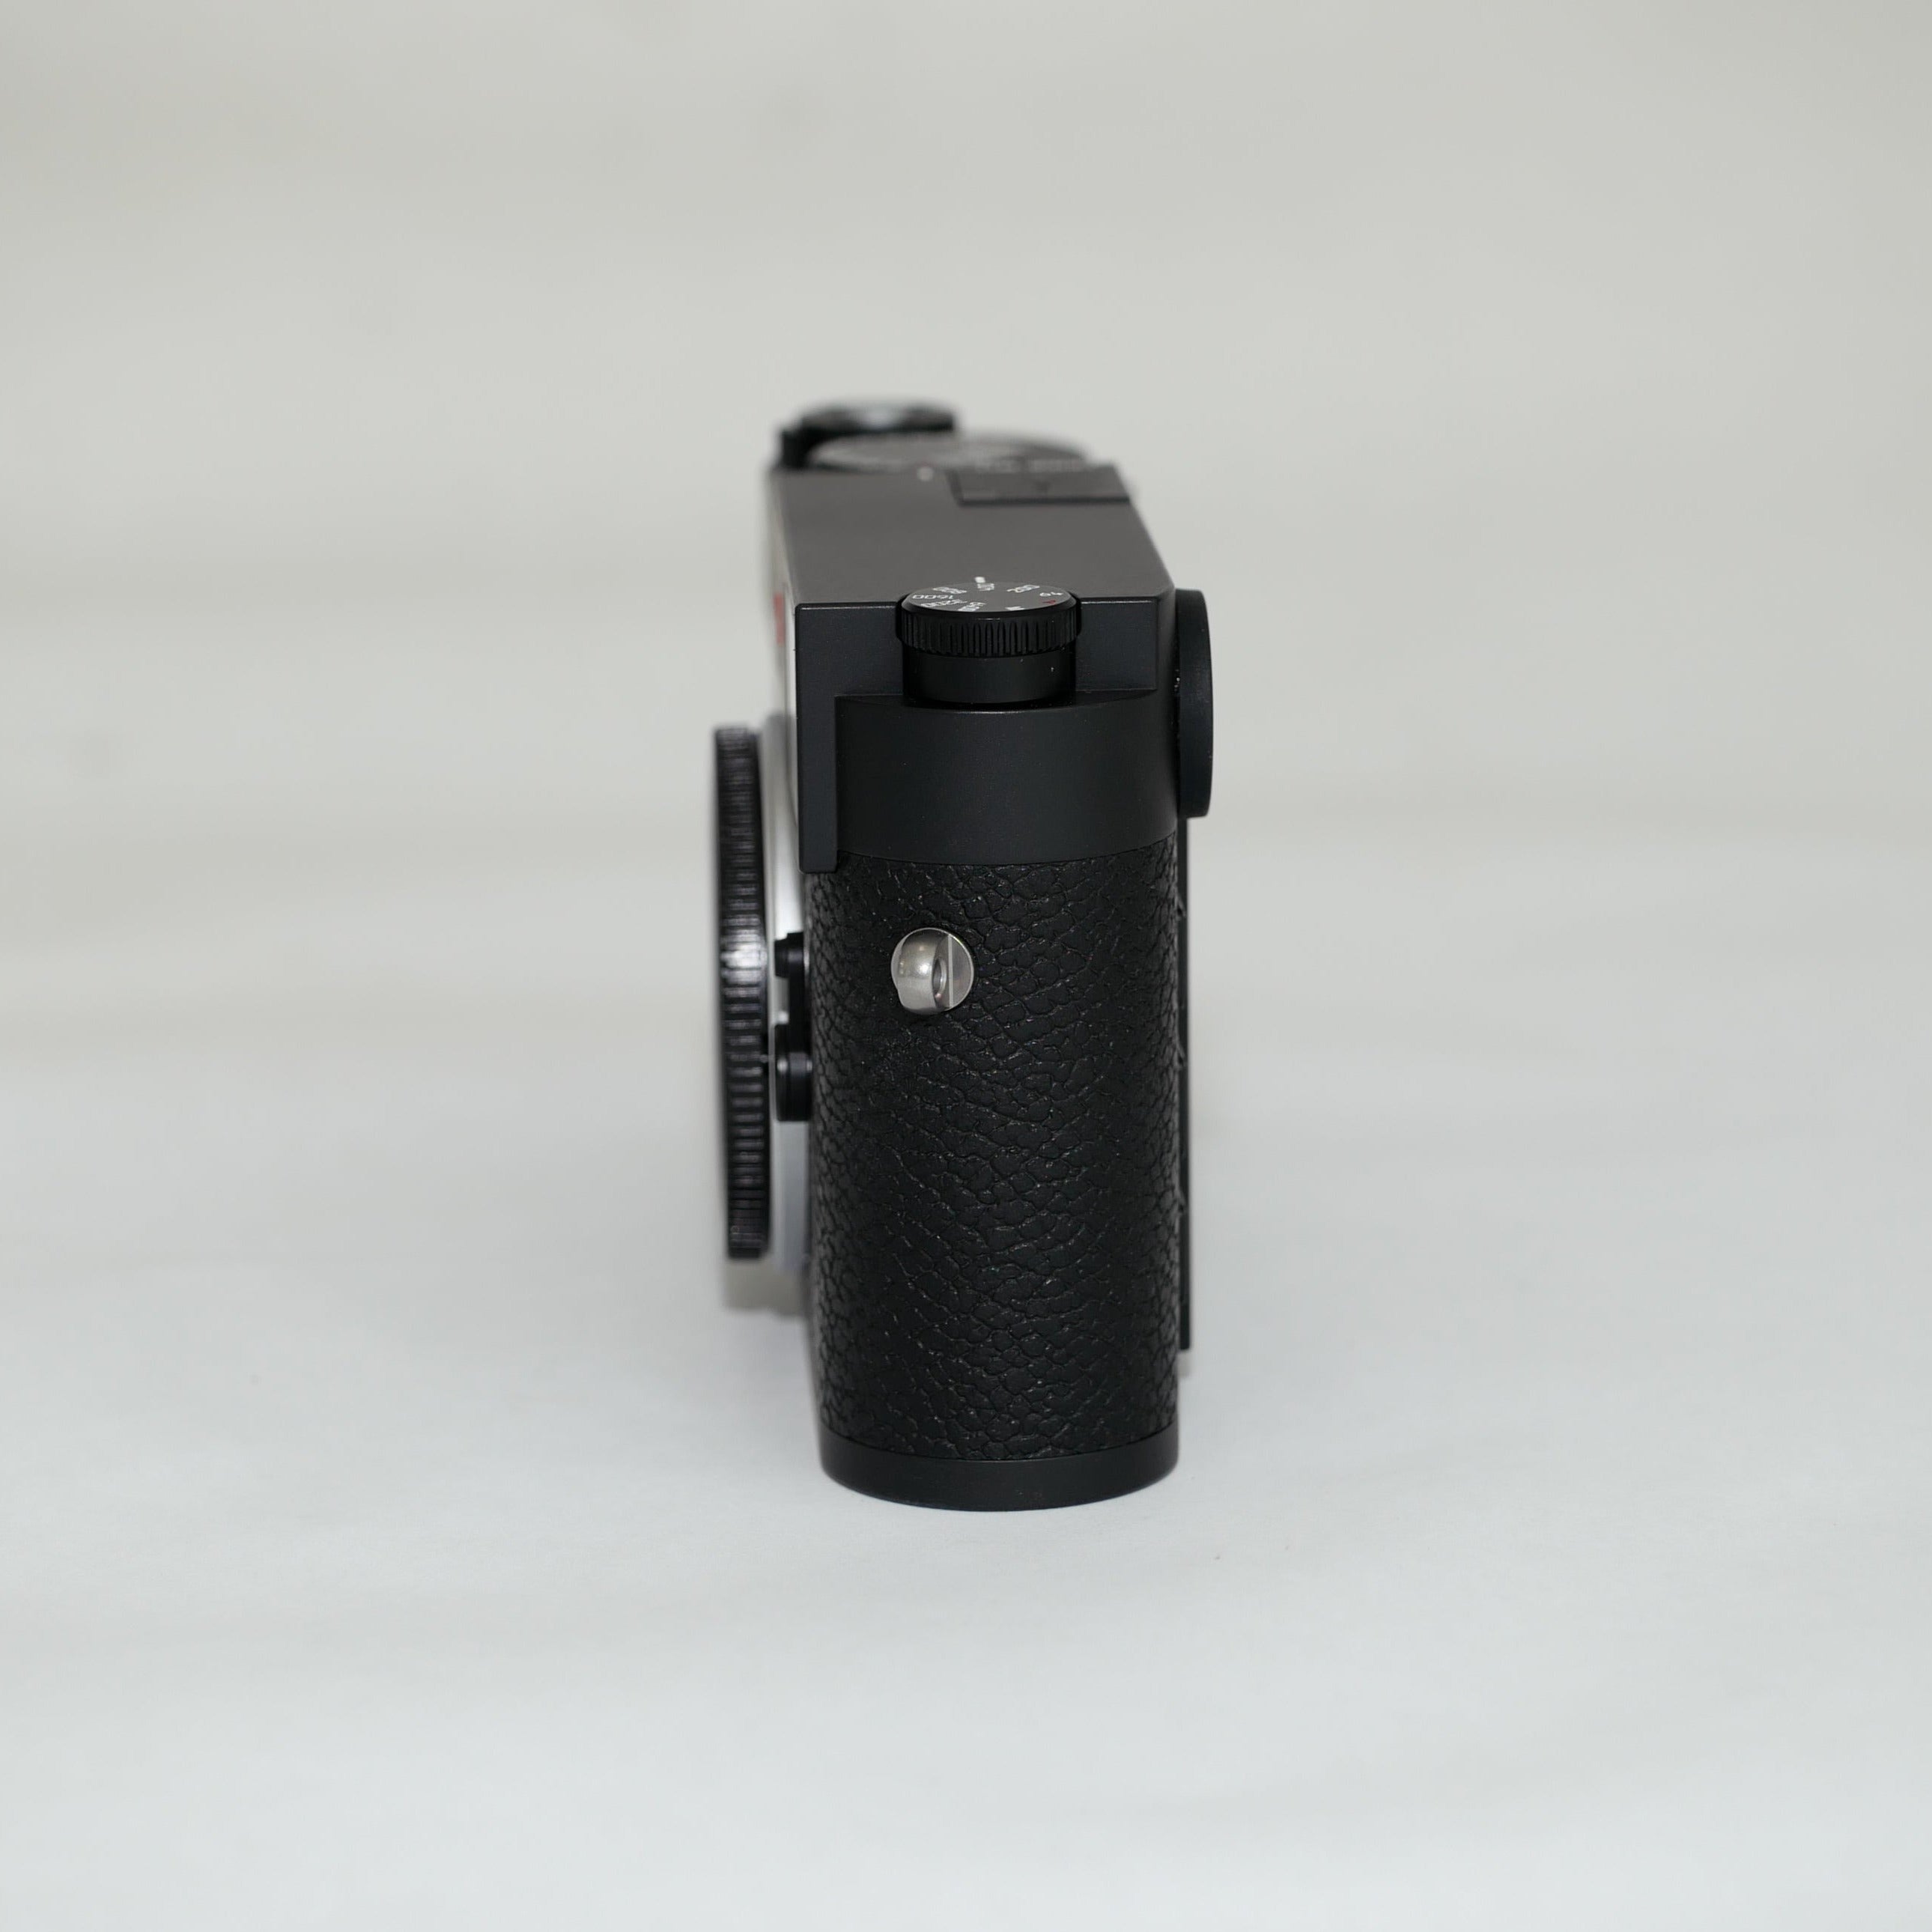 Pre-Owned Leica M11 Rangefinder Camera (Black)